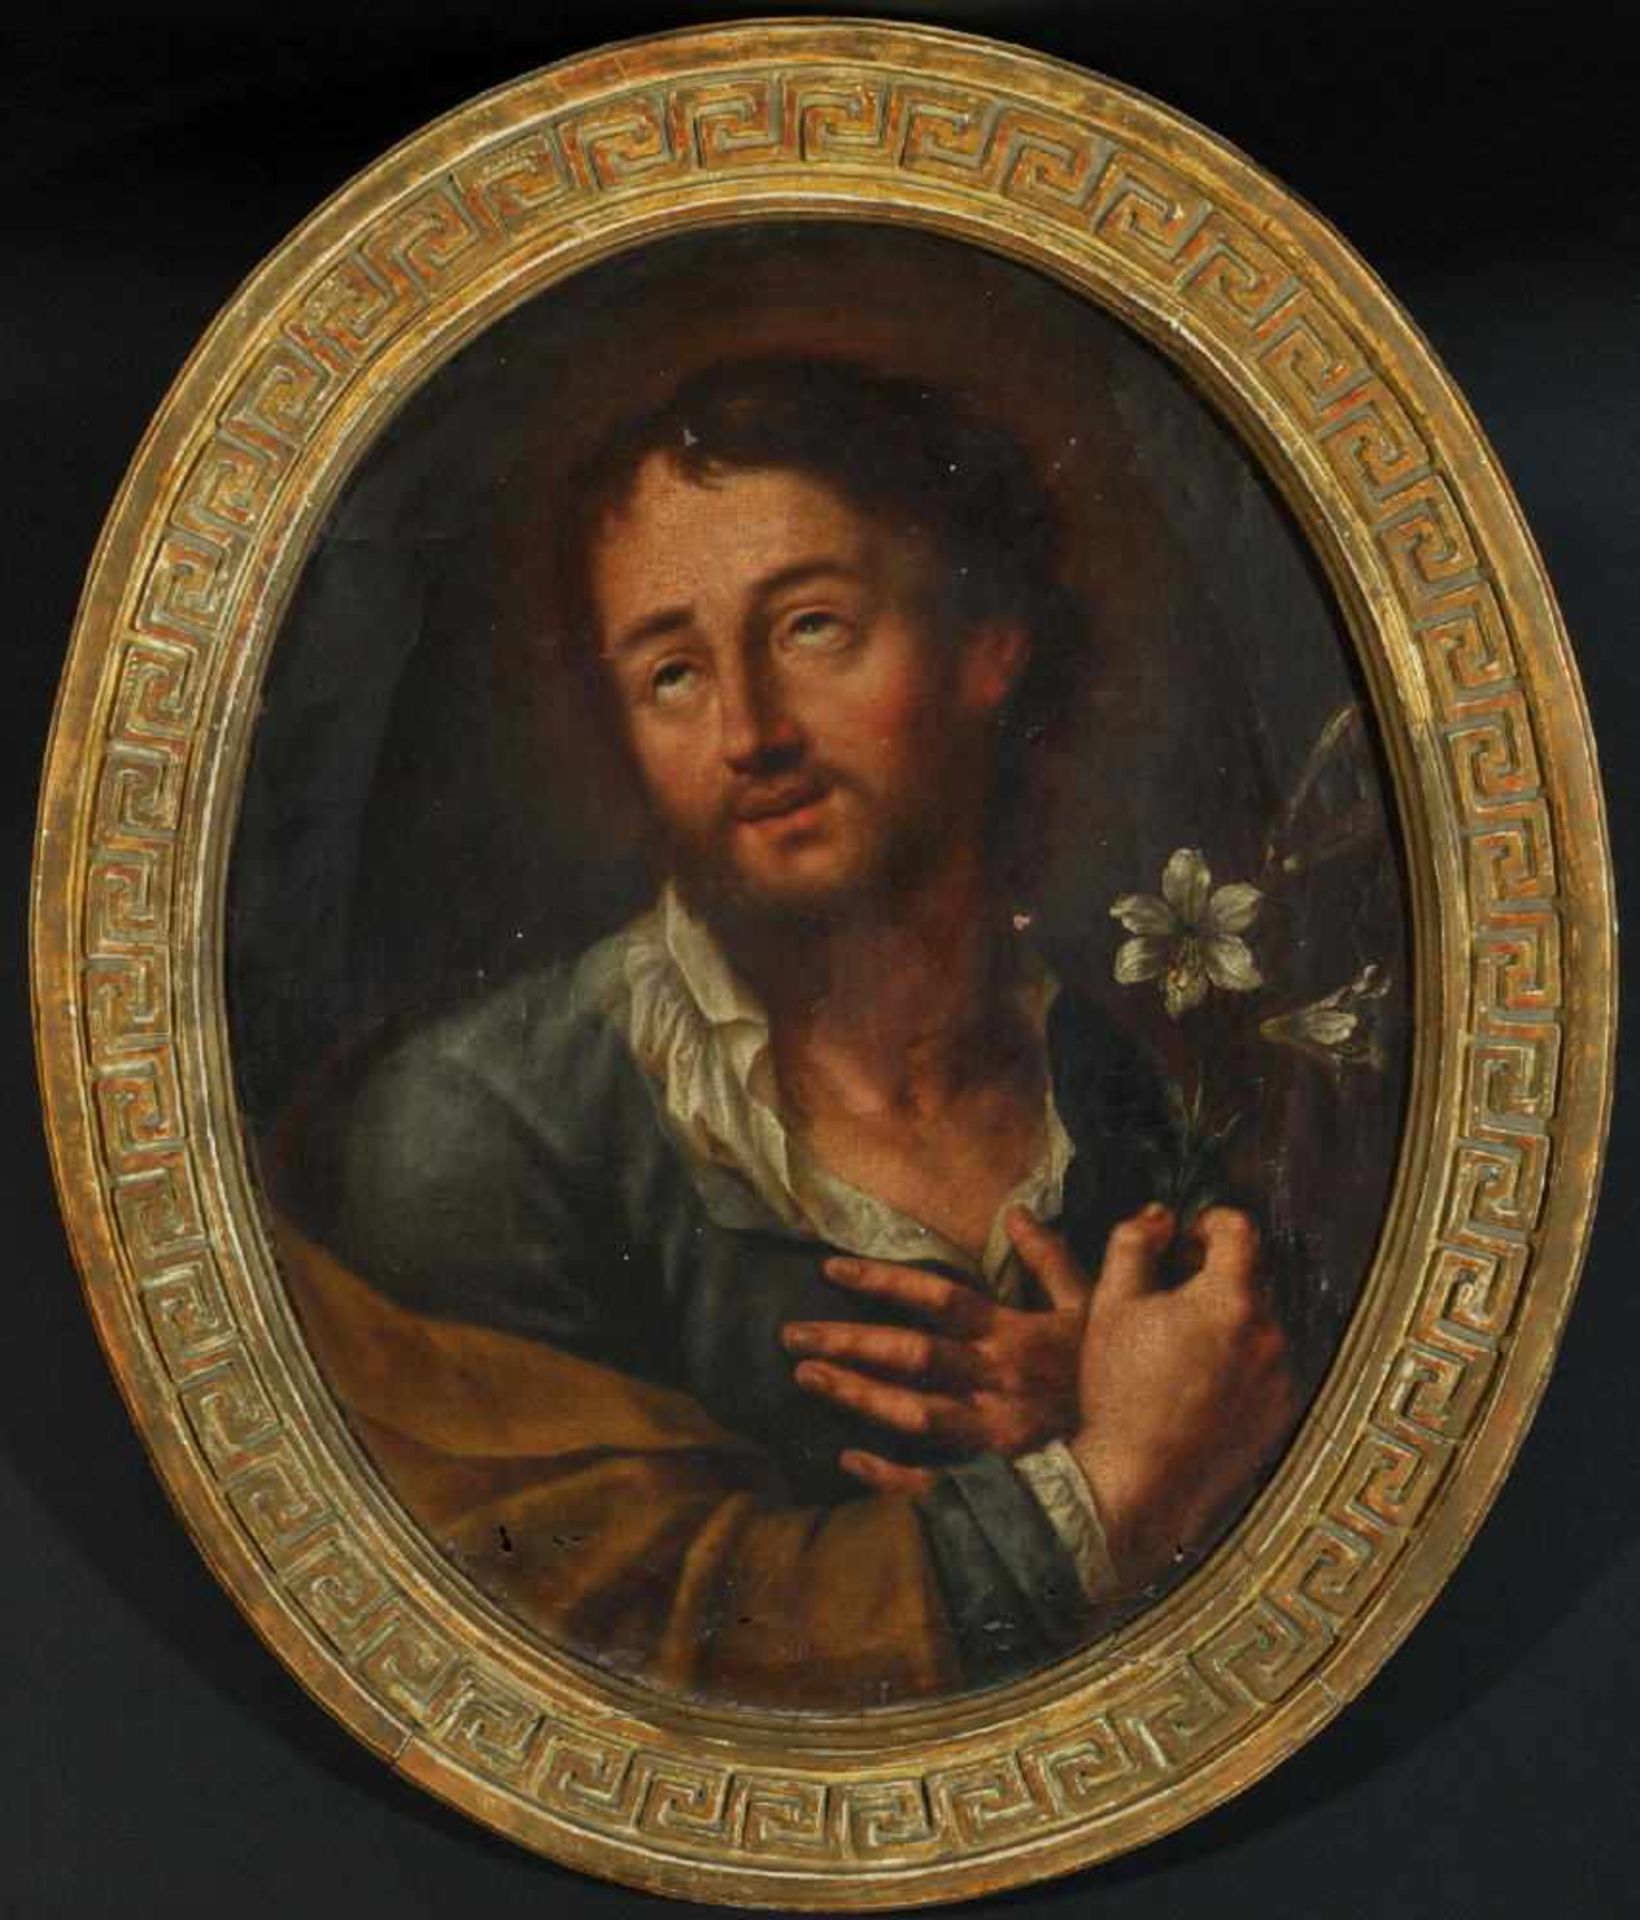 Bildnismaler des 18. Jh.Öl/Lwd, oval, 55 x 43 cm, " Heiliger Joseph ", besch.